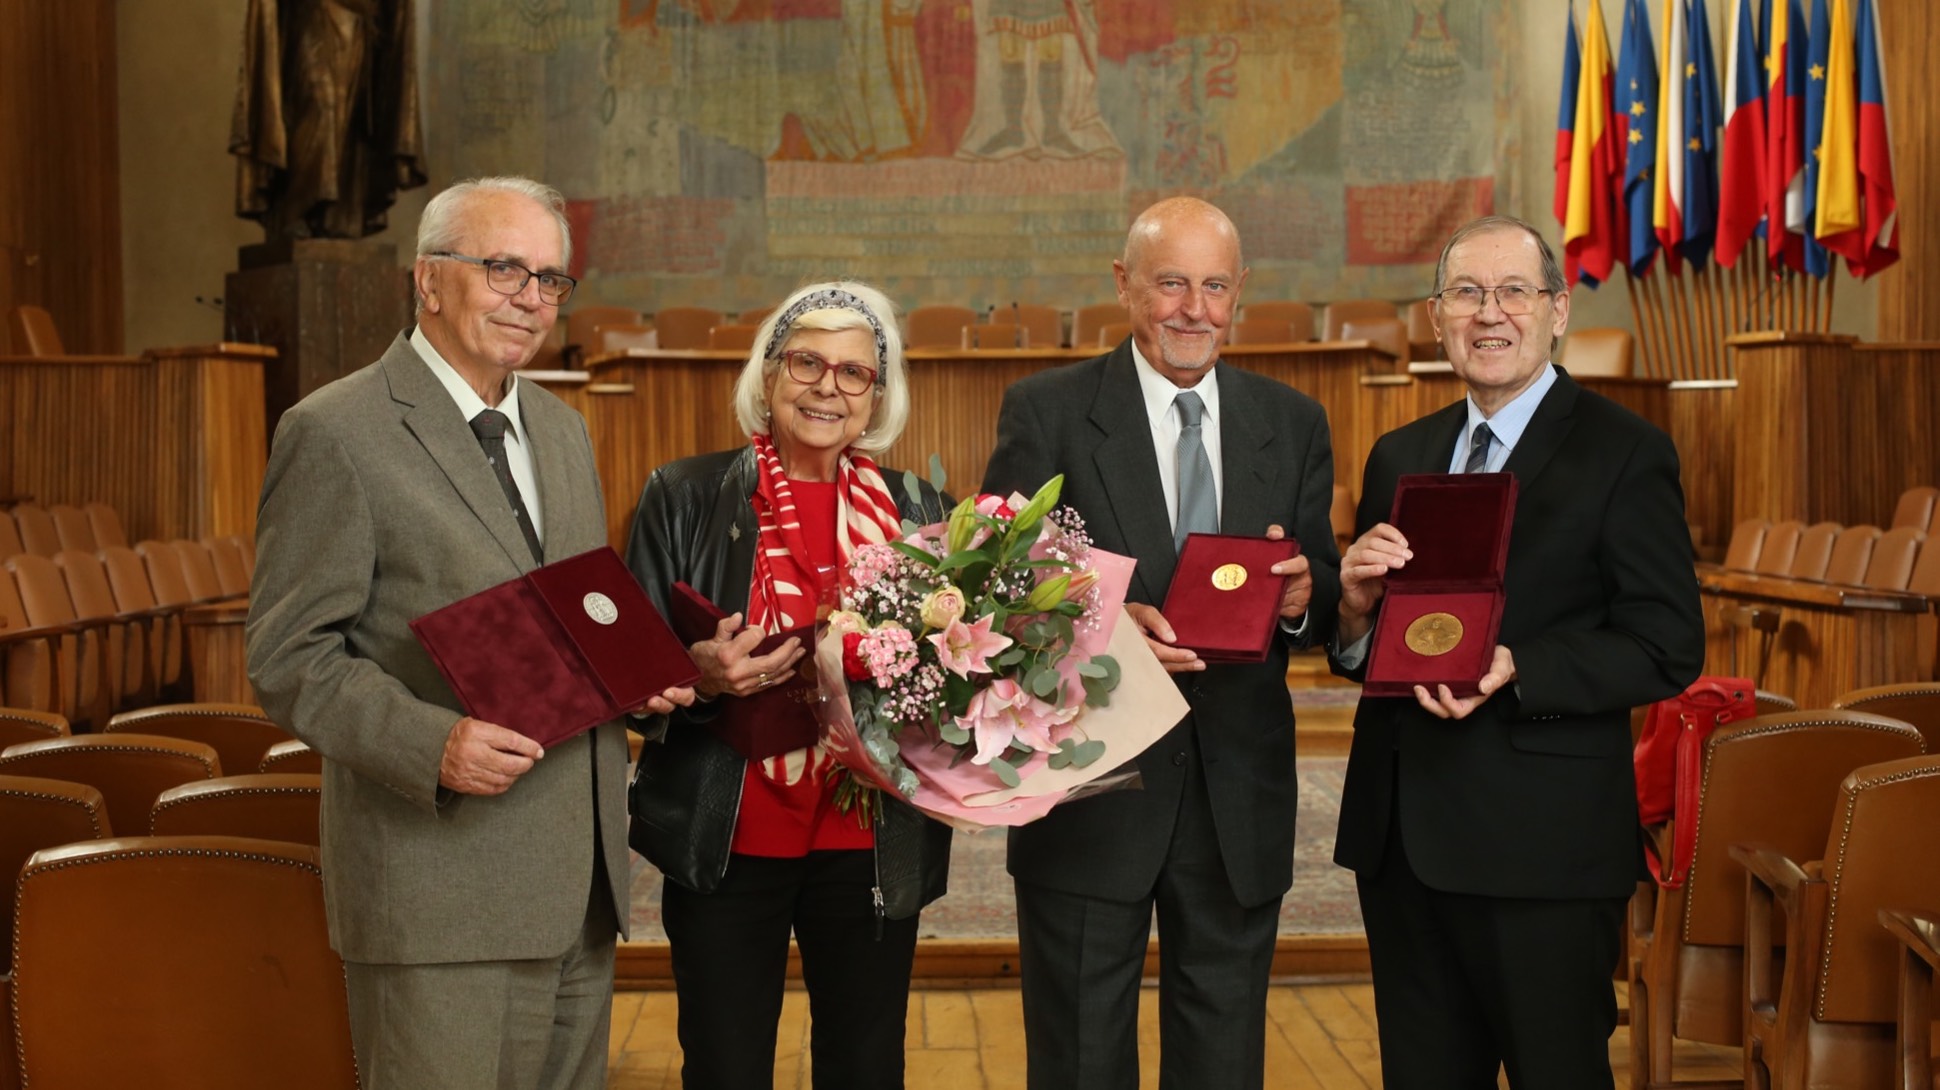 Vědecká rada Univerzity Karlovy udělila čtyři medaile